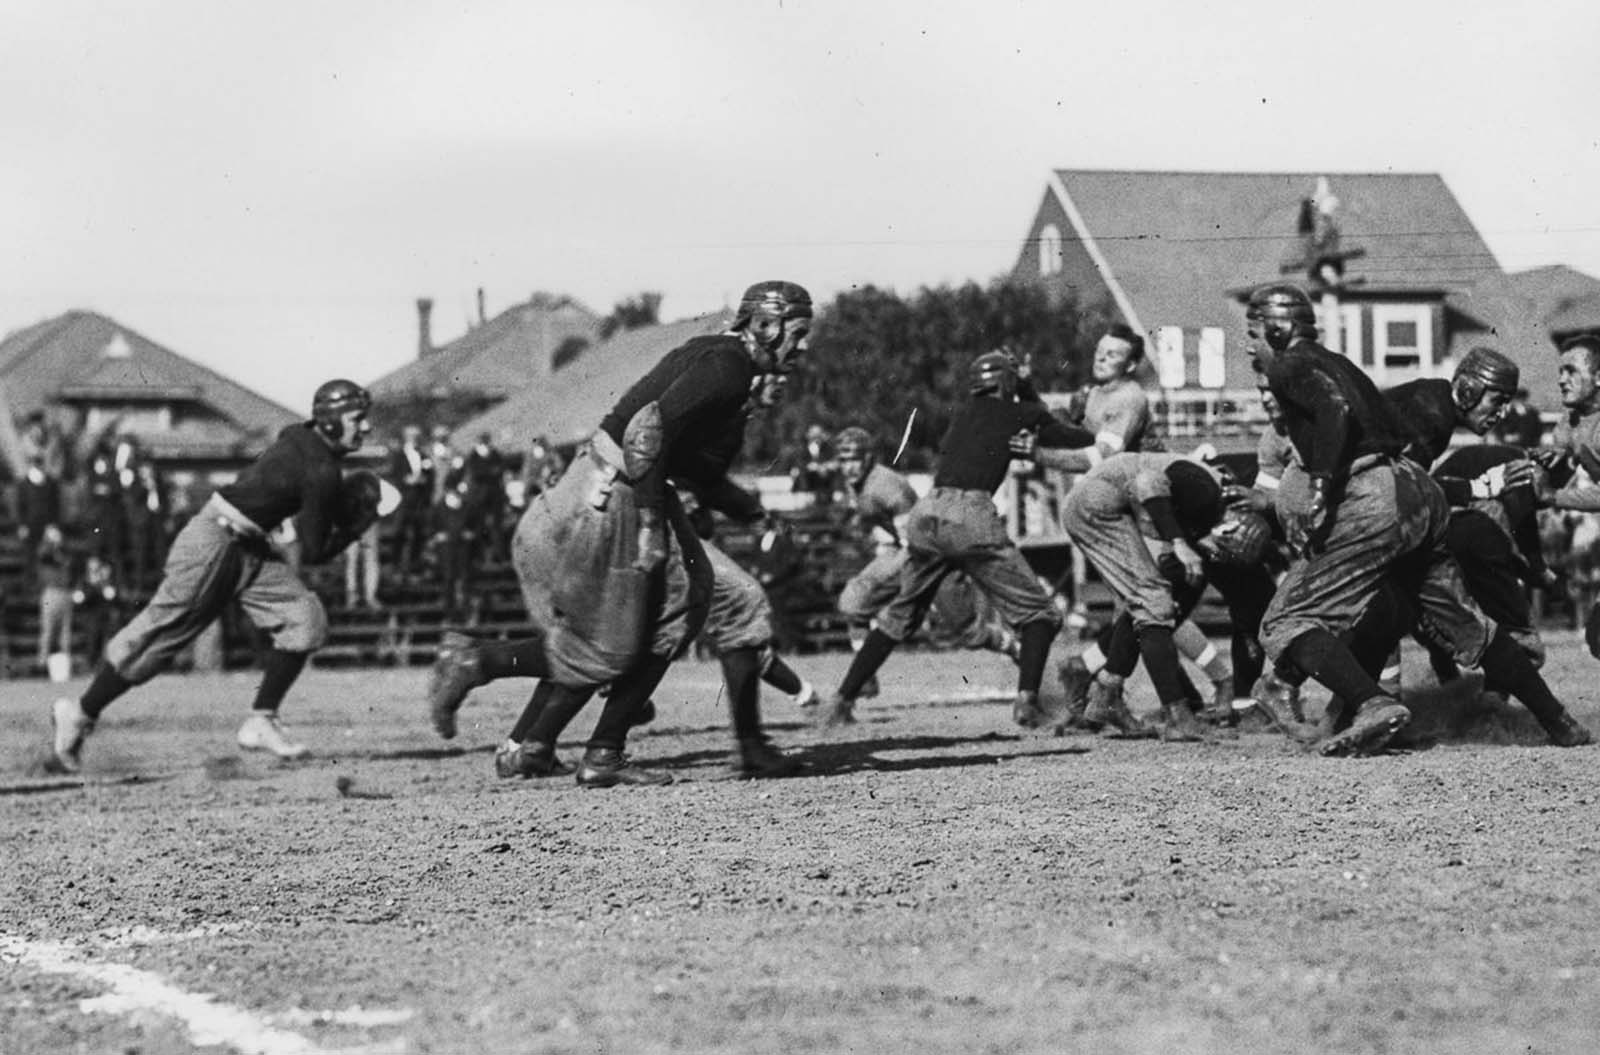 Les premiers jours violents du football américain, 1902-1924